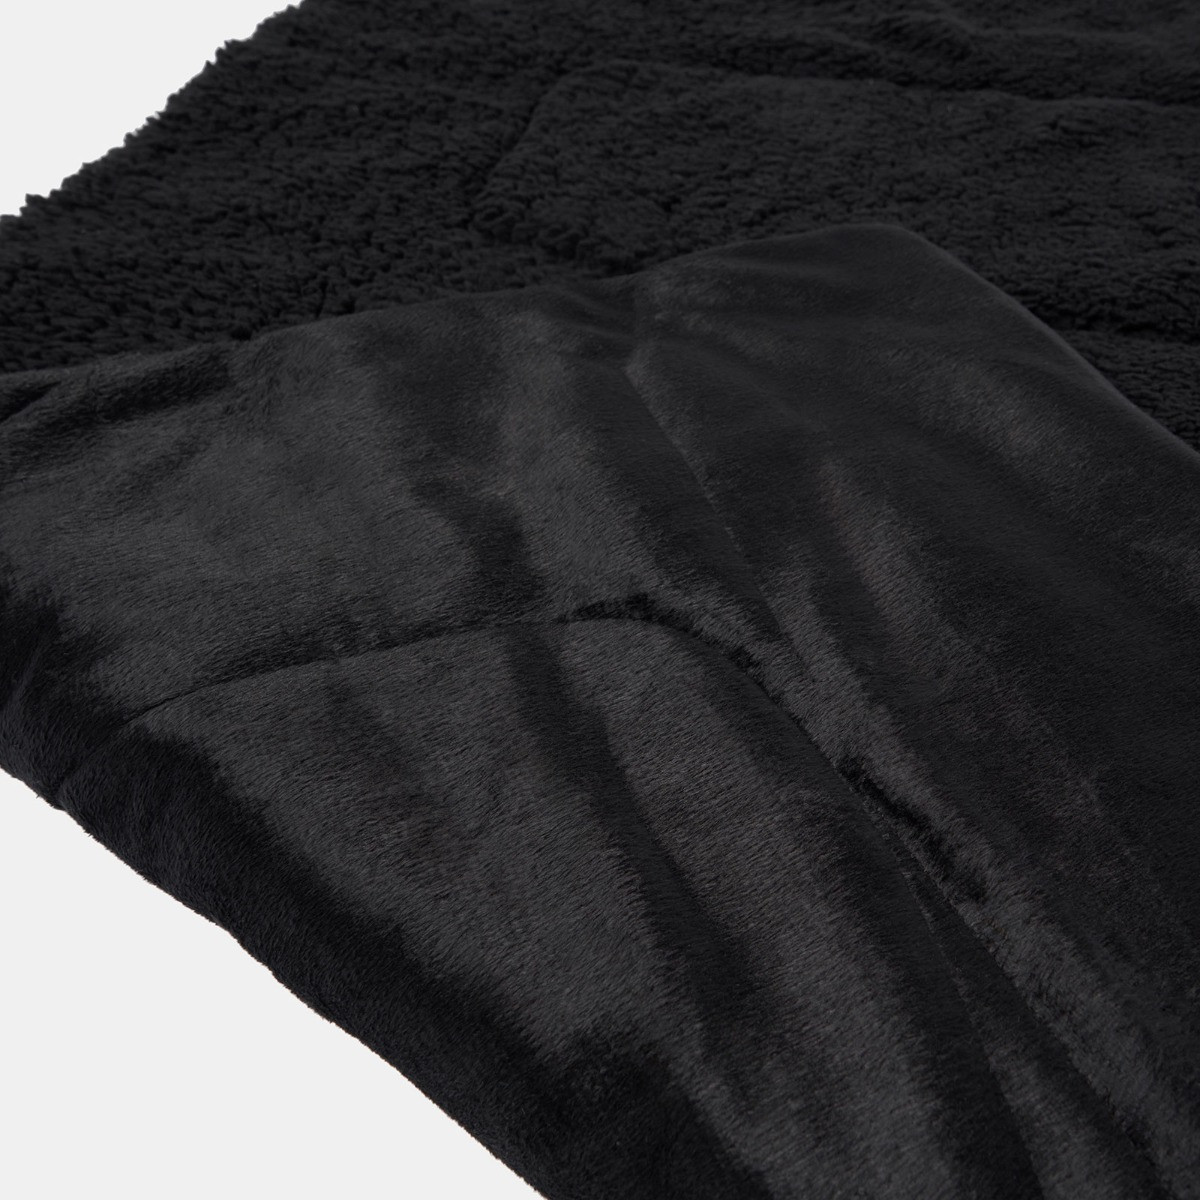 Brentfords Sherpa Soft Quilted Pet Blanket - Black>